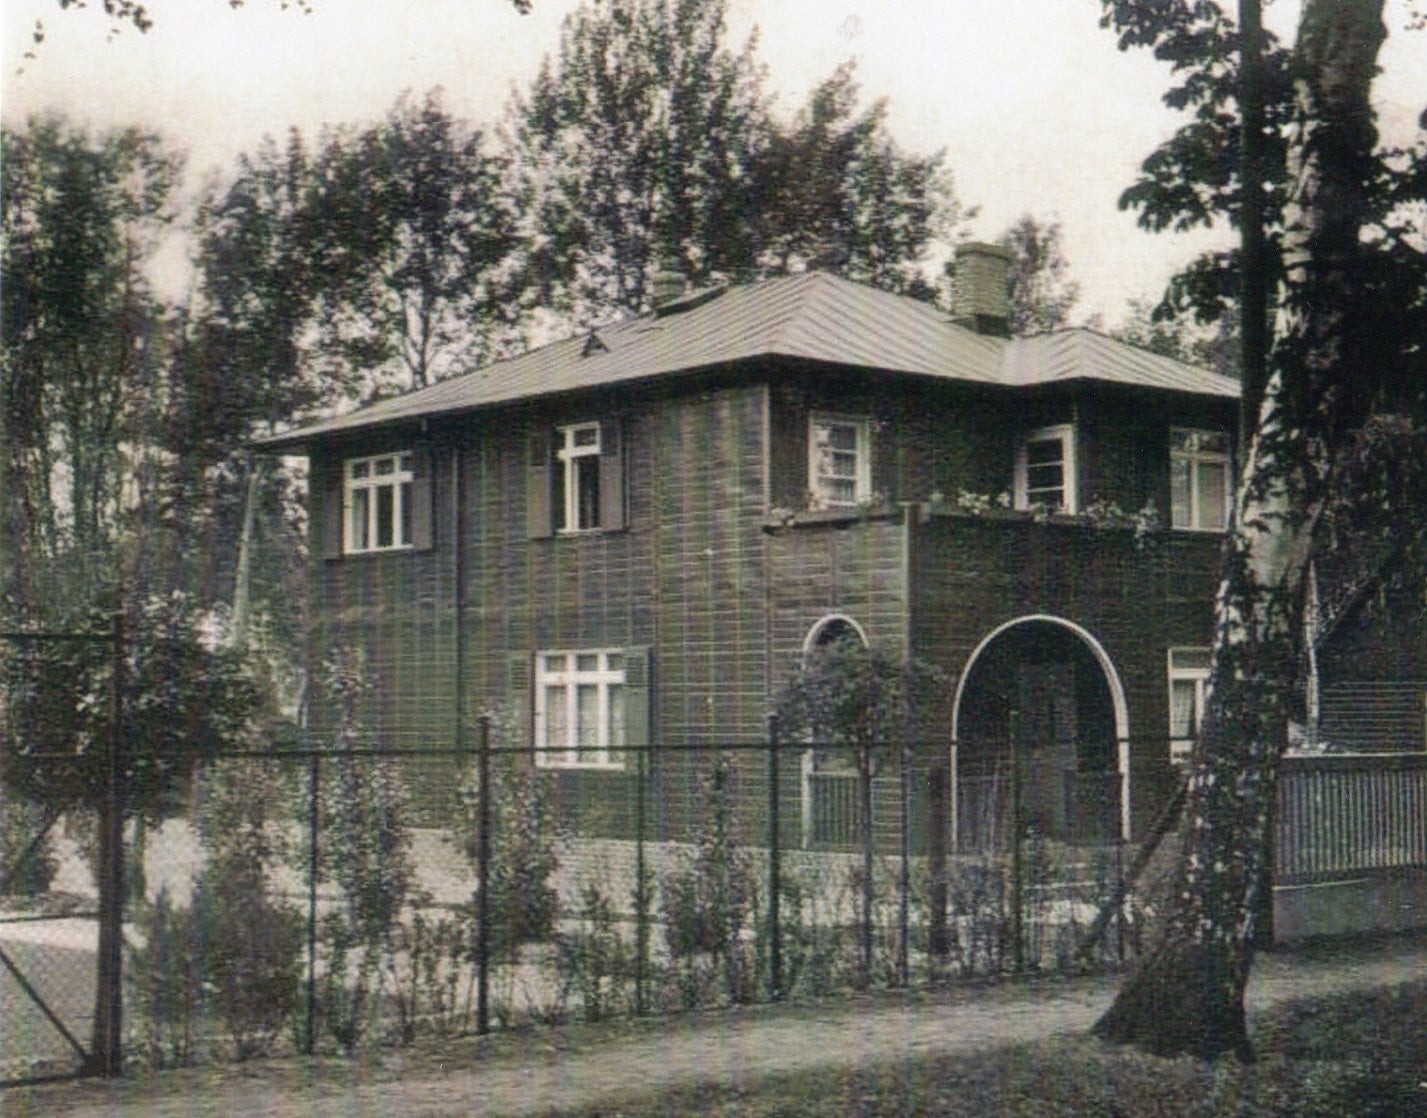 Abb. 5. Kupferhaus in der Florastraße mit ursprünglichem Aussehen. Foto: Archiv Verfasser